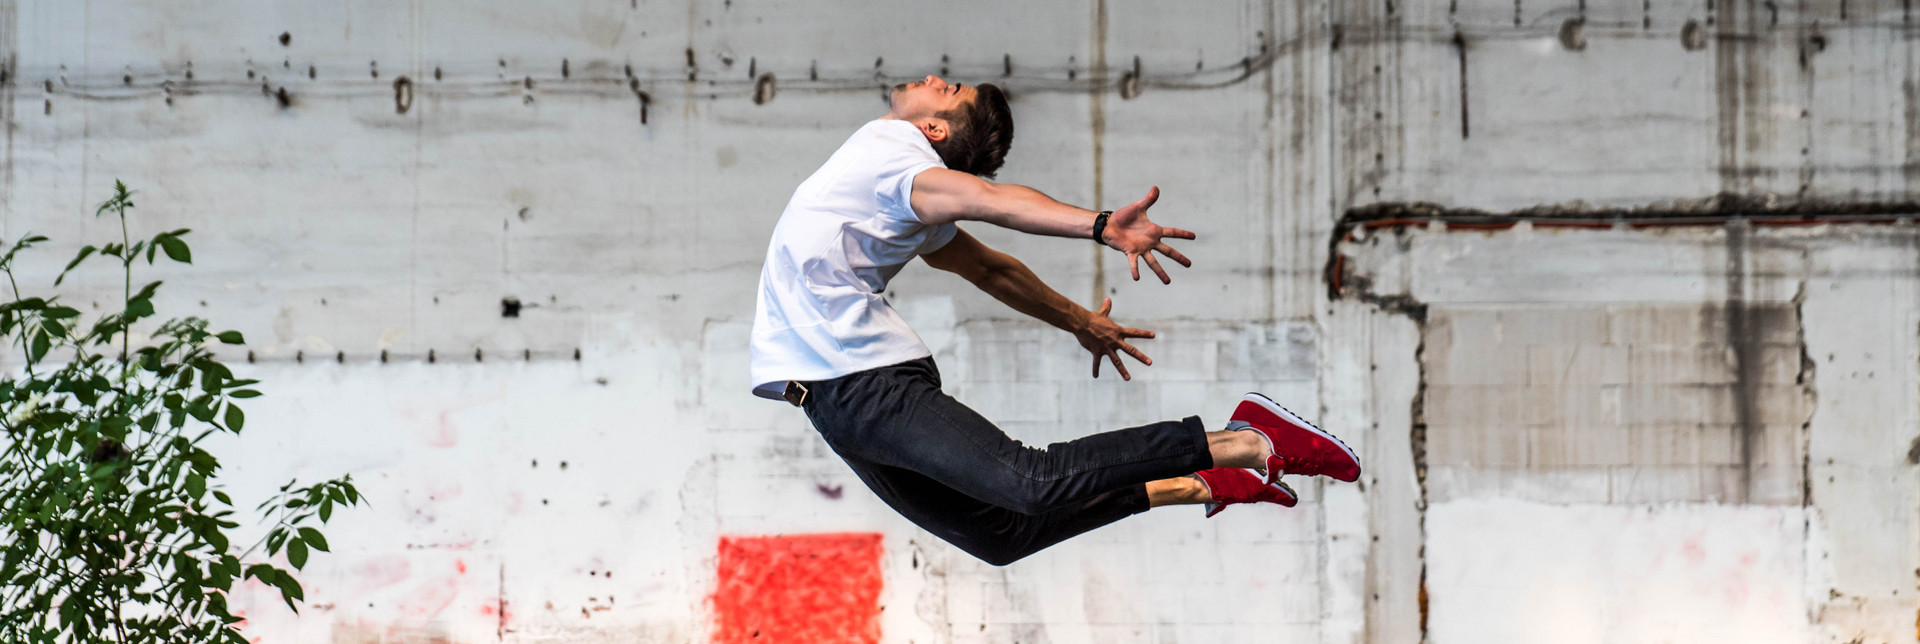 Ein junger Tänzer springt mit nach hinten gestreckten Beinen und Armen in die Luft